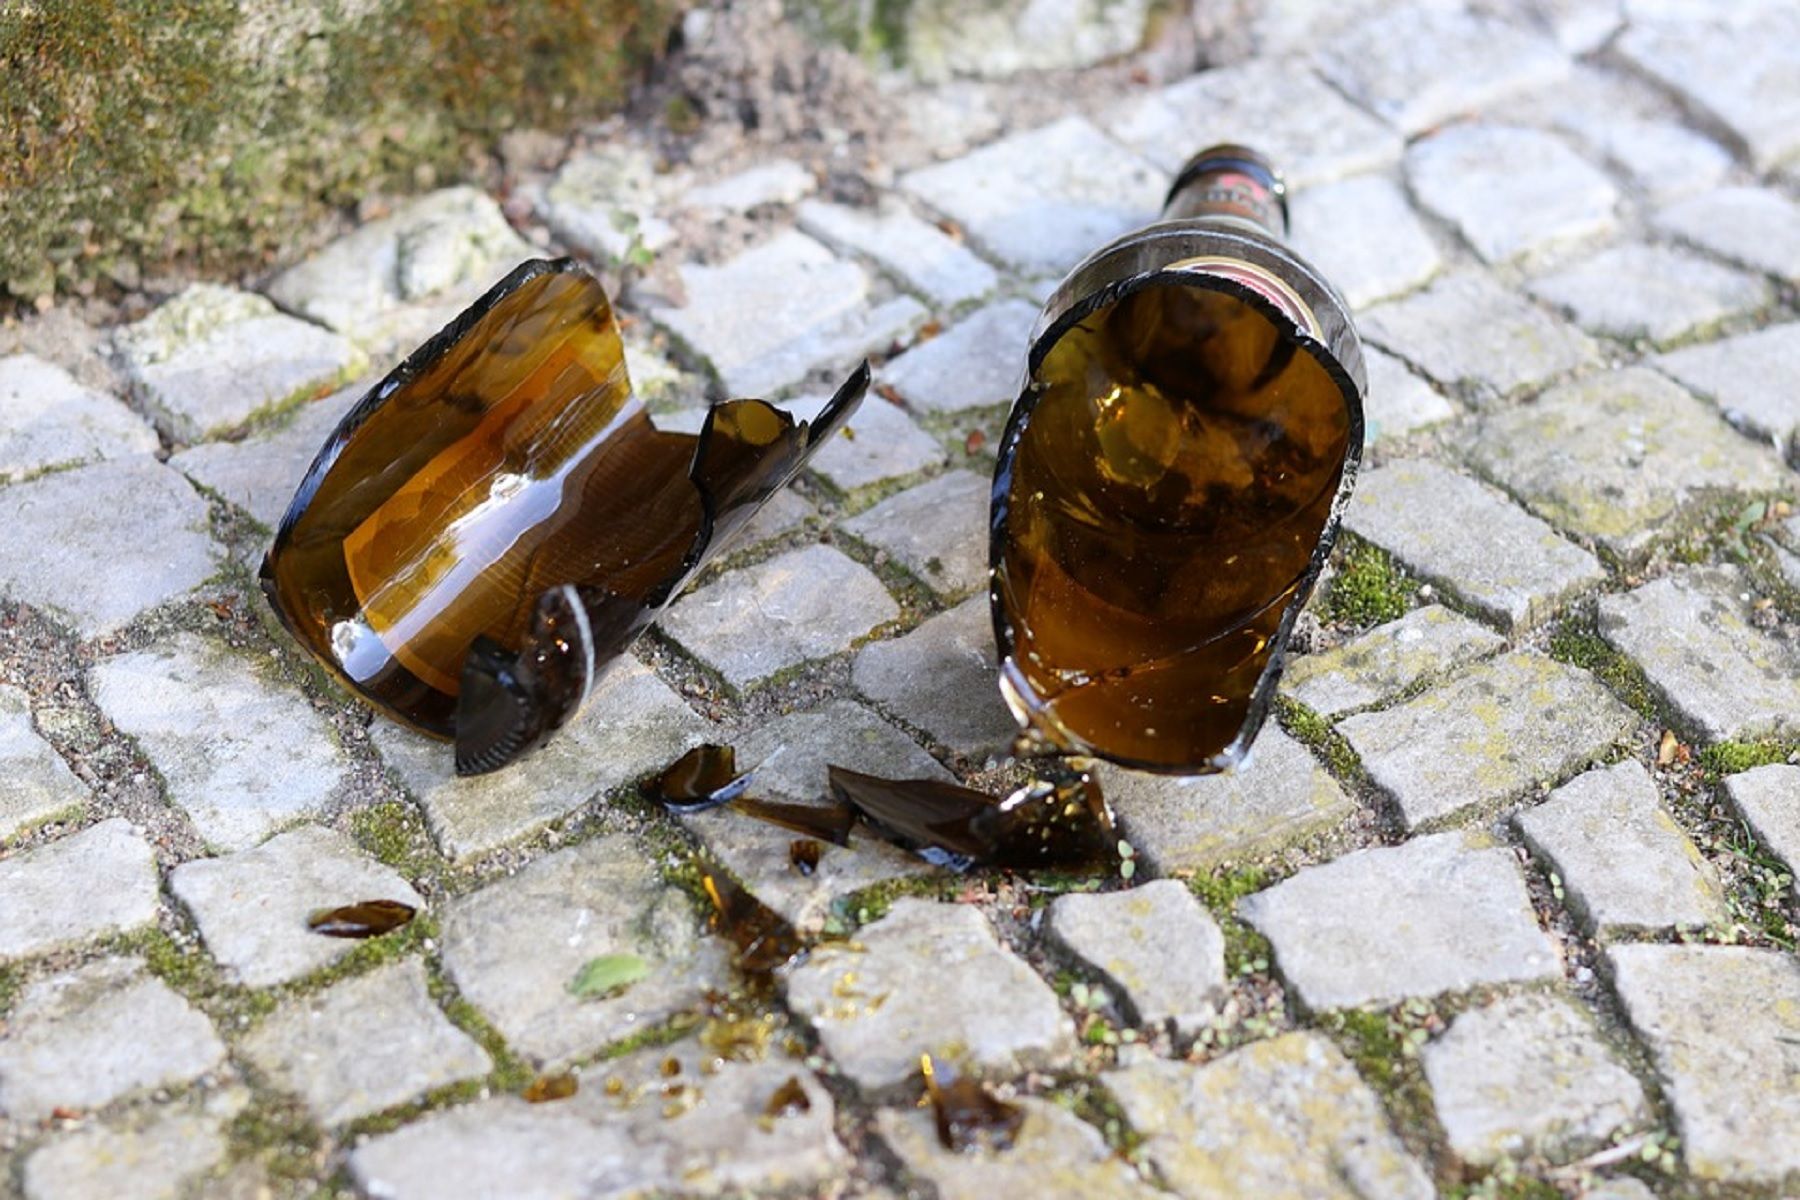 Hundió una botella rota en su abdomen / Pixabay